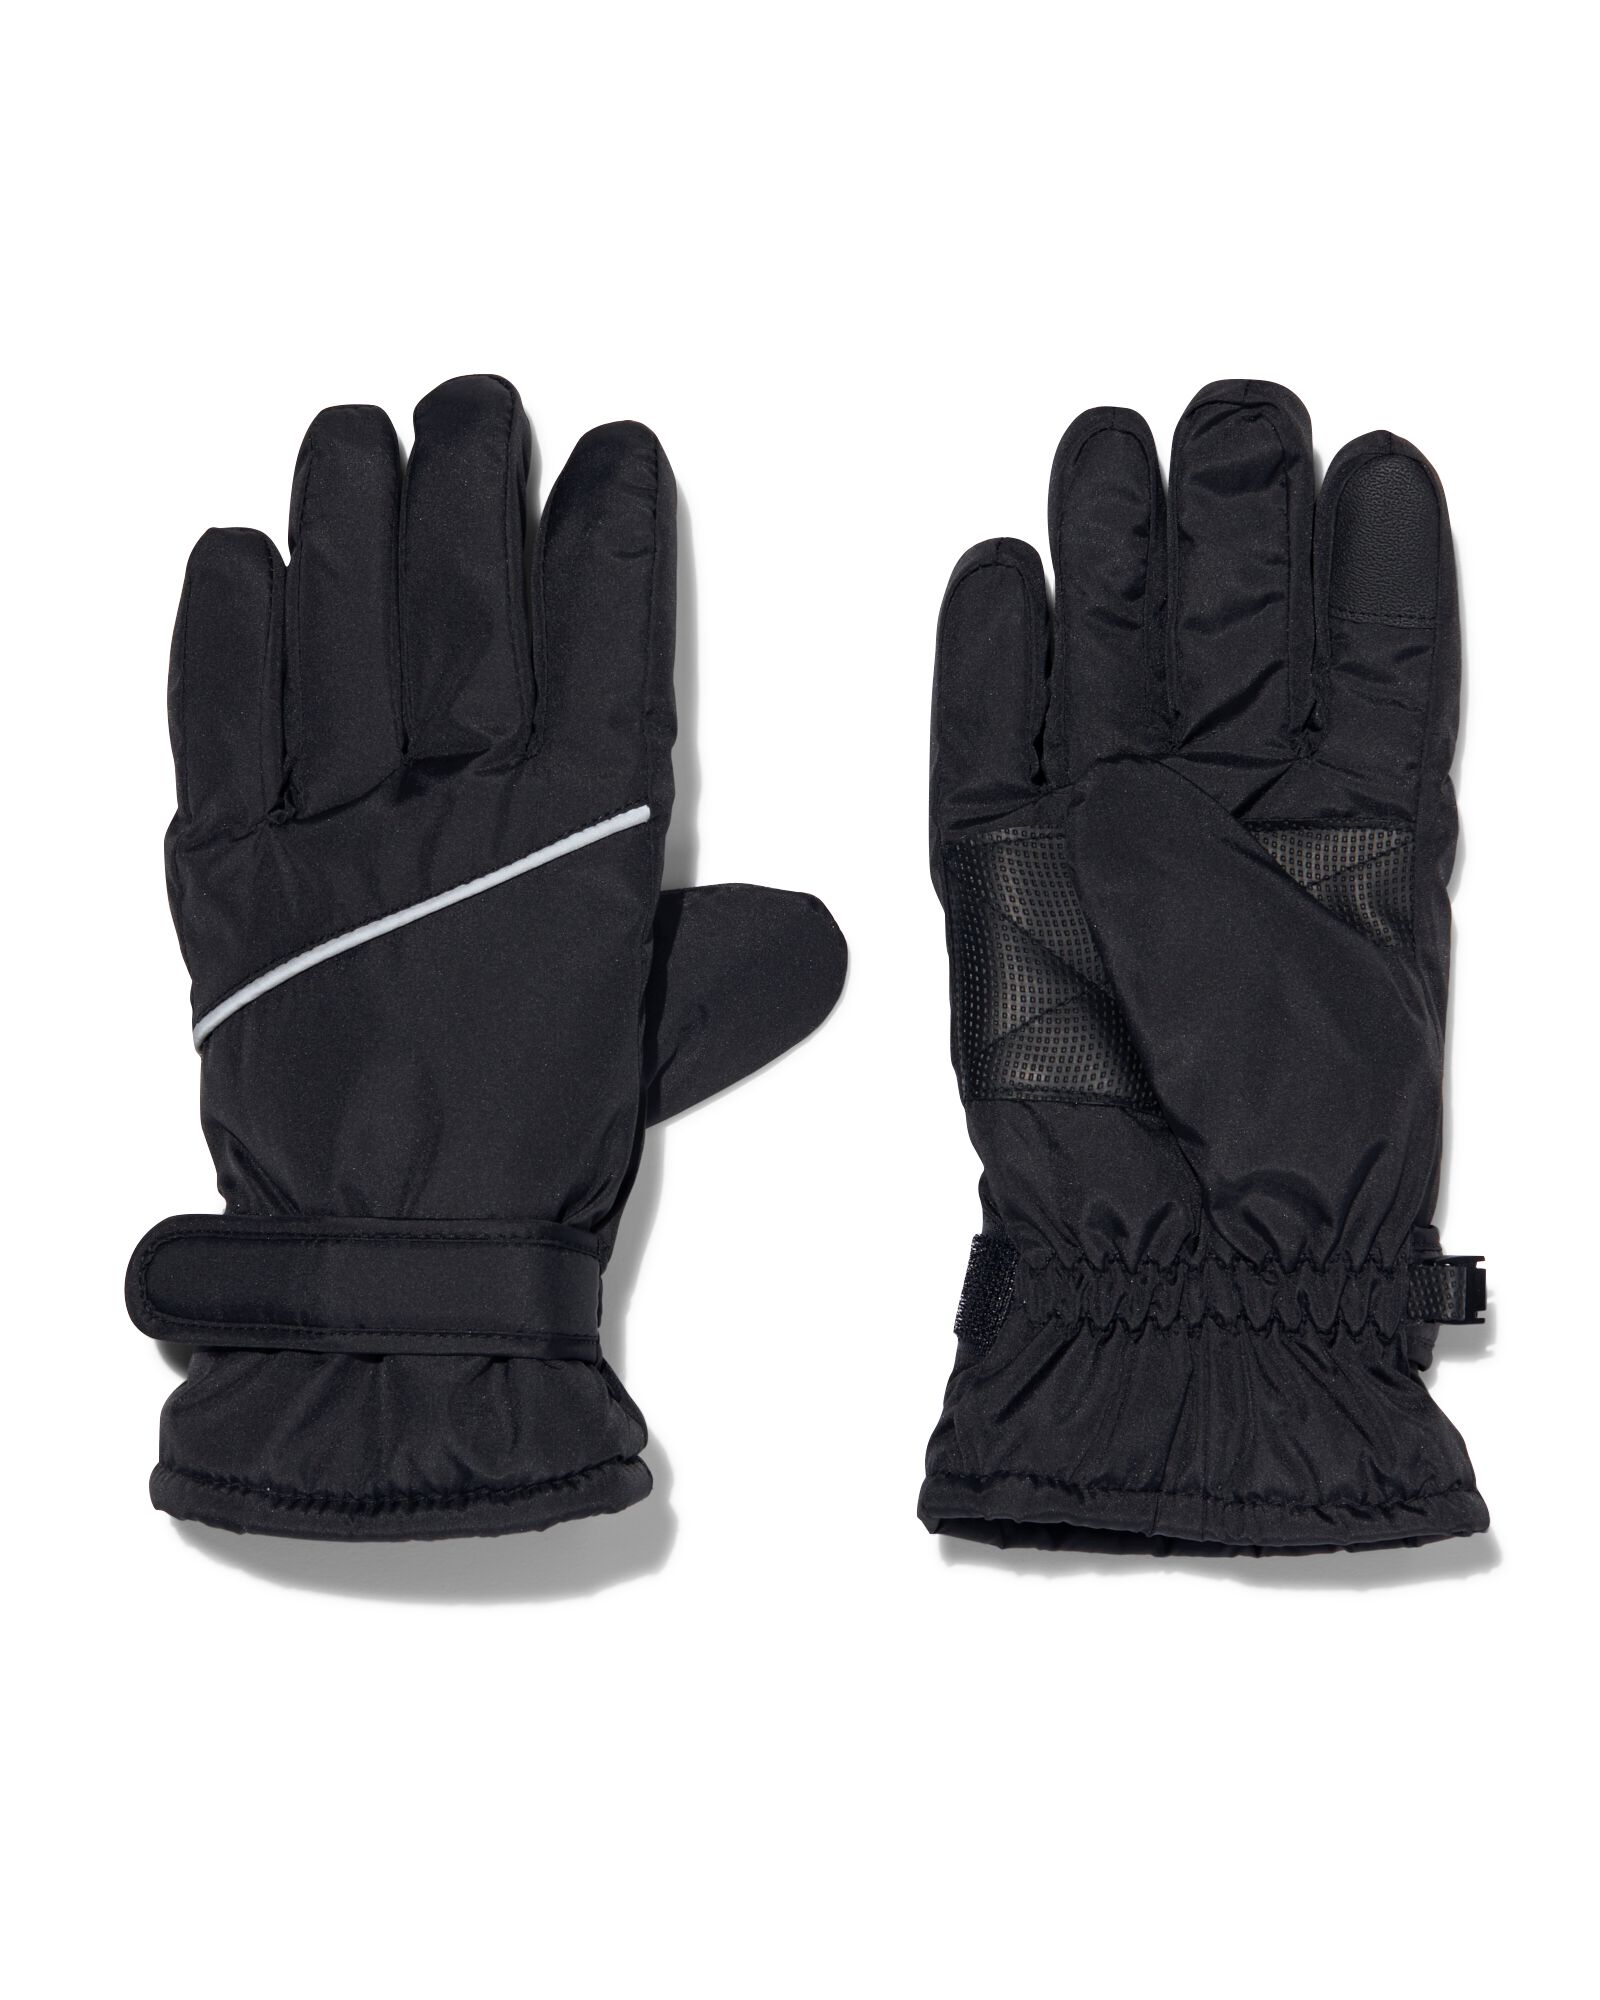 kinder handschoenen waterafstotend met touchscreen zwart 134/140 - 16711633 - HEMA